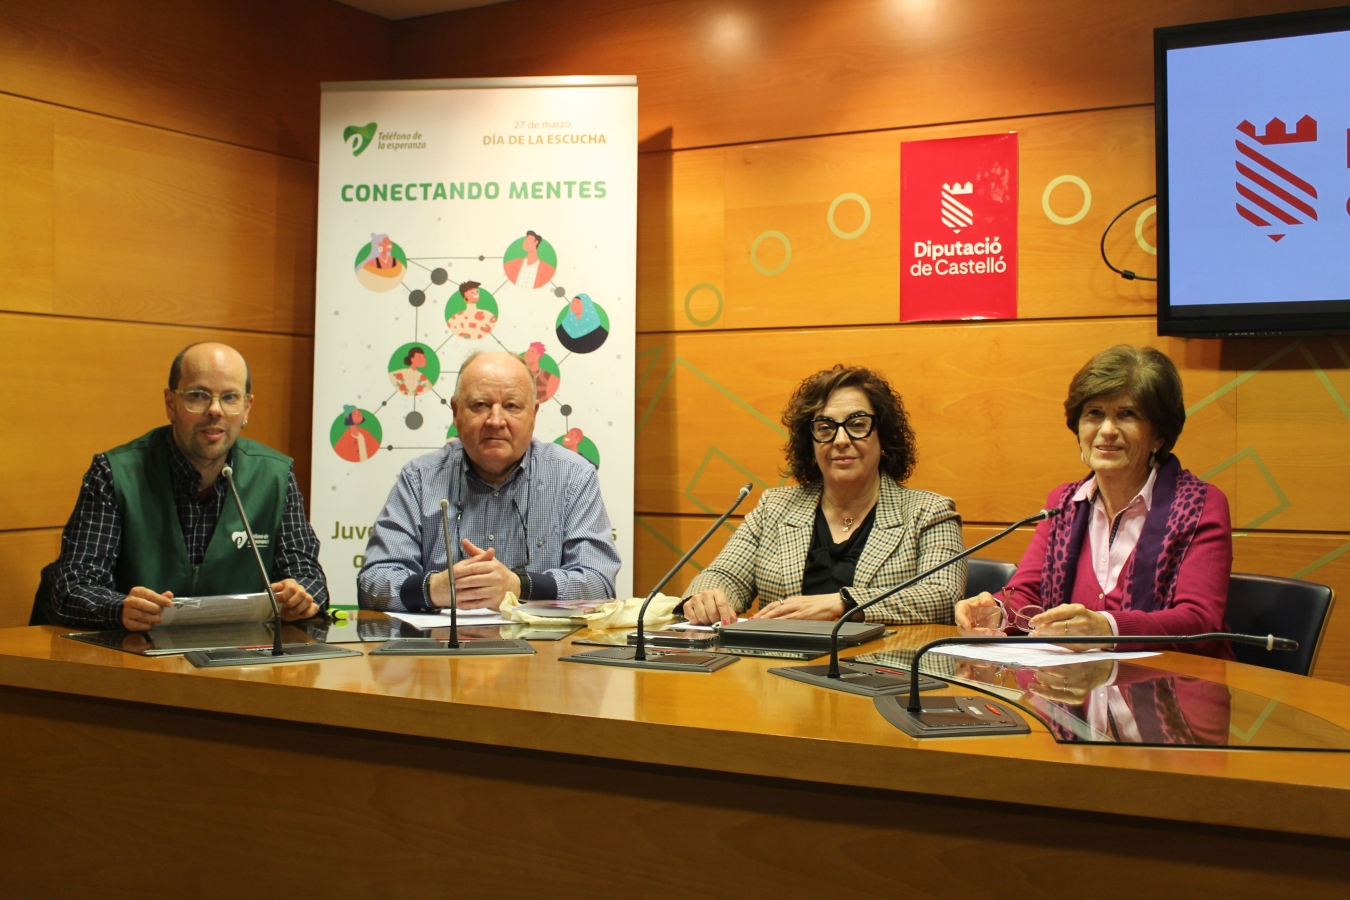 La Diputació de Castelló col·labora amb l'Associació el Telèfon de l'Esperança i acull la presentació del Xat Esperança, un servici d'atenció psicològica